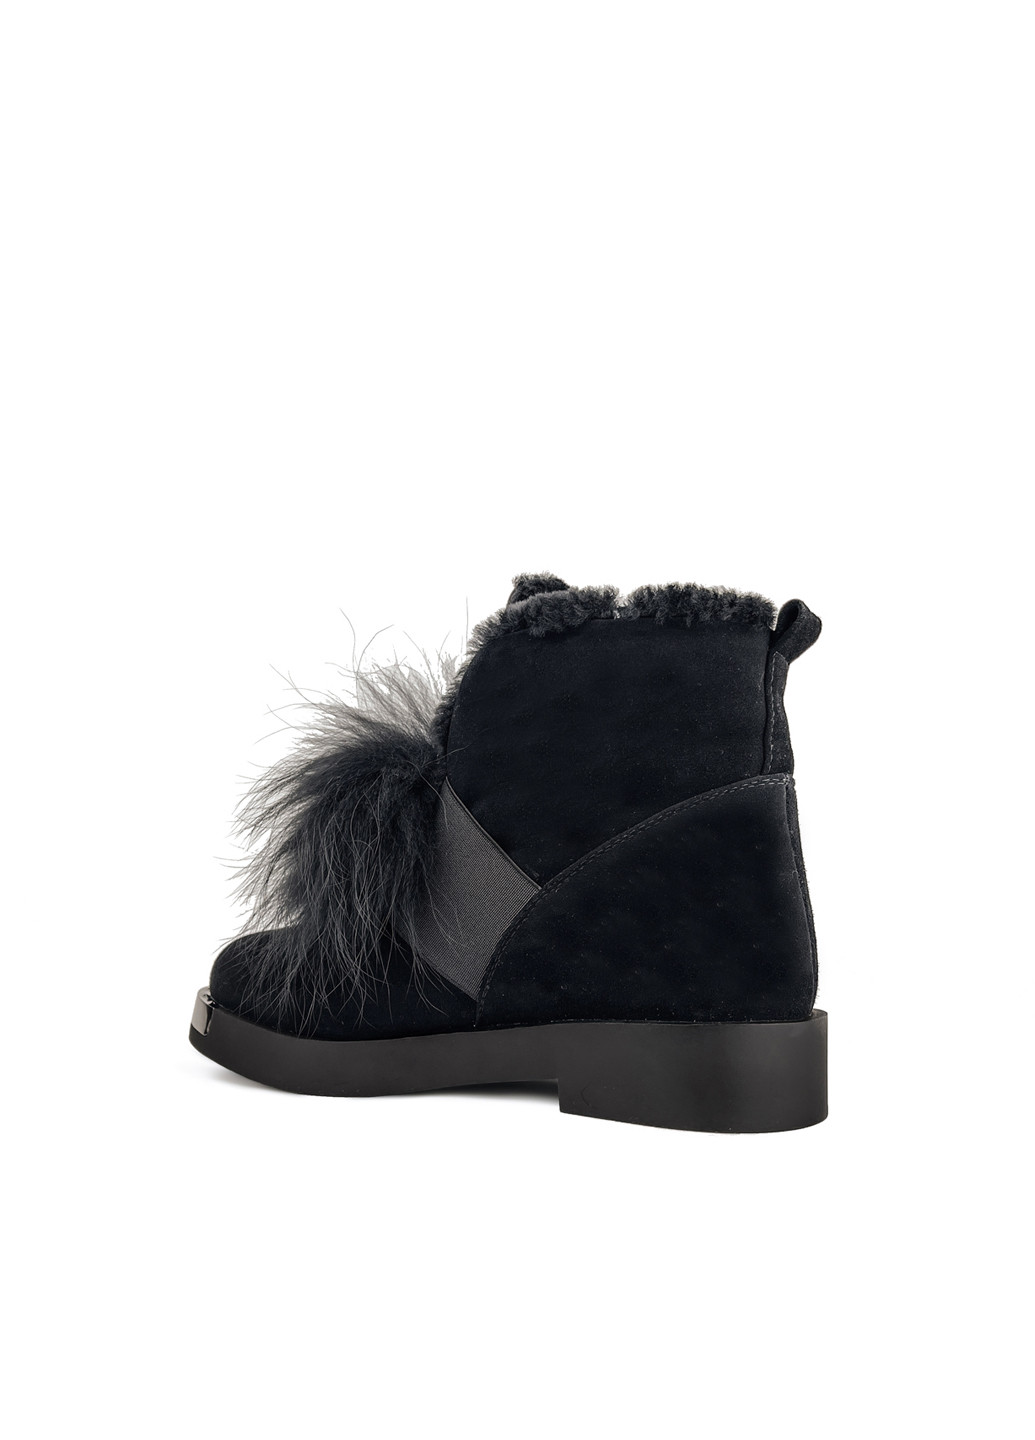 Зимние ботинки женские черные замшевые с мехом зимние Brocoli из натуральной замши